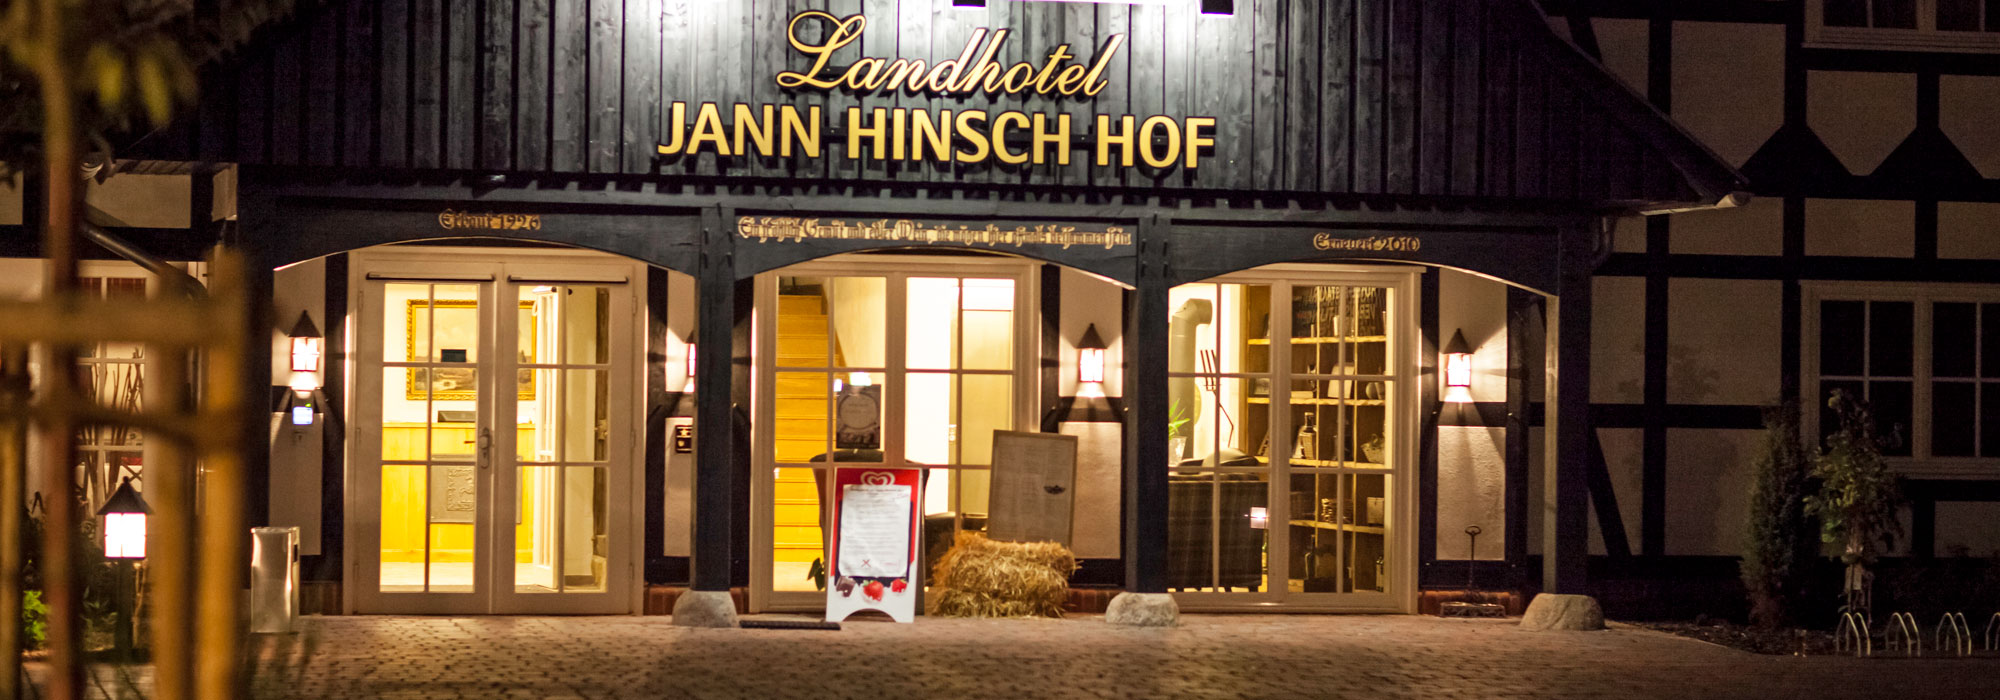 Der Jann Hinsch Hof<br>Hotel und Restaurant im Herzen der Lüneburger Heide